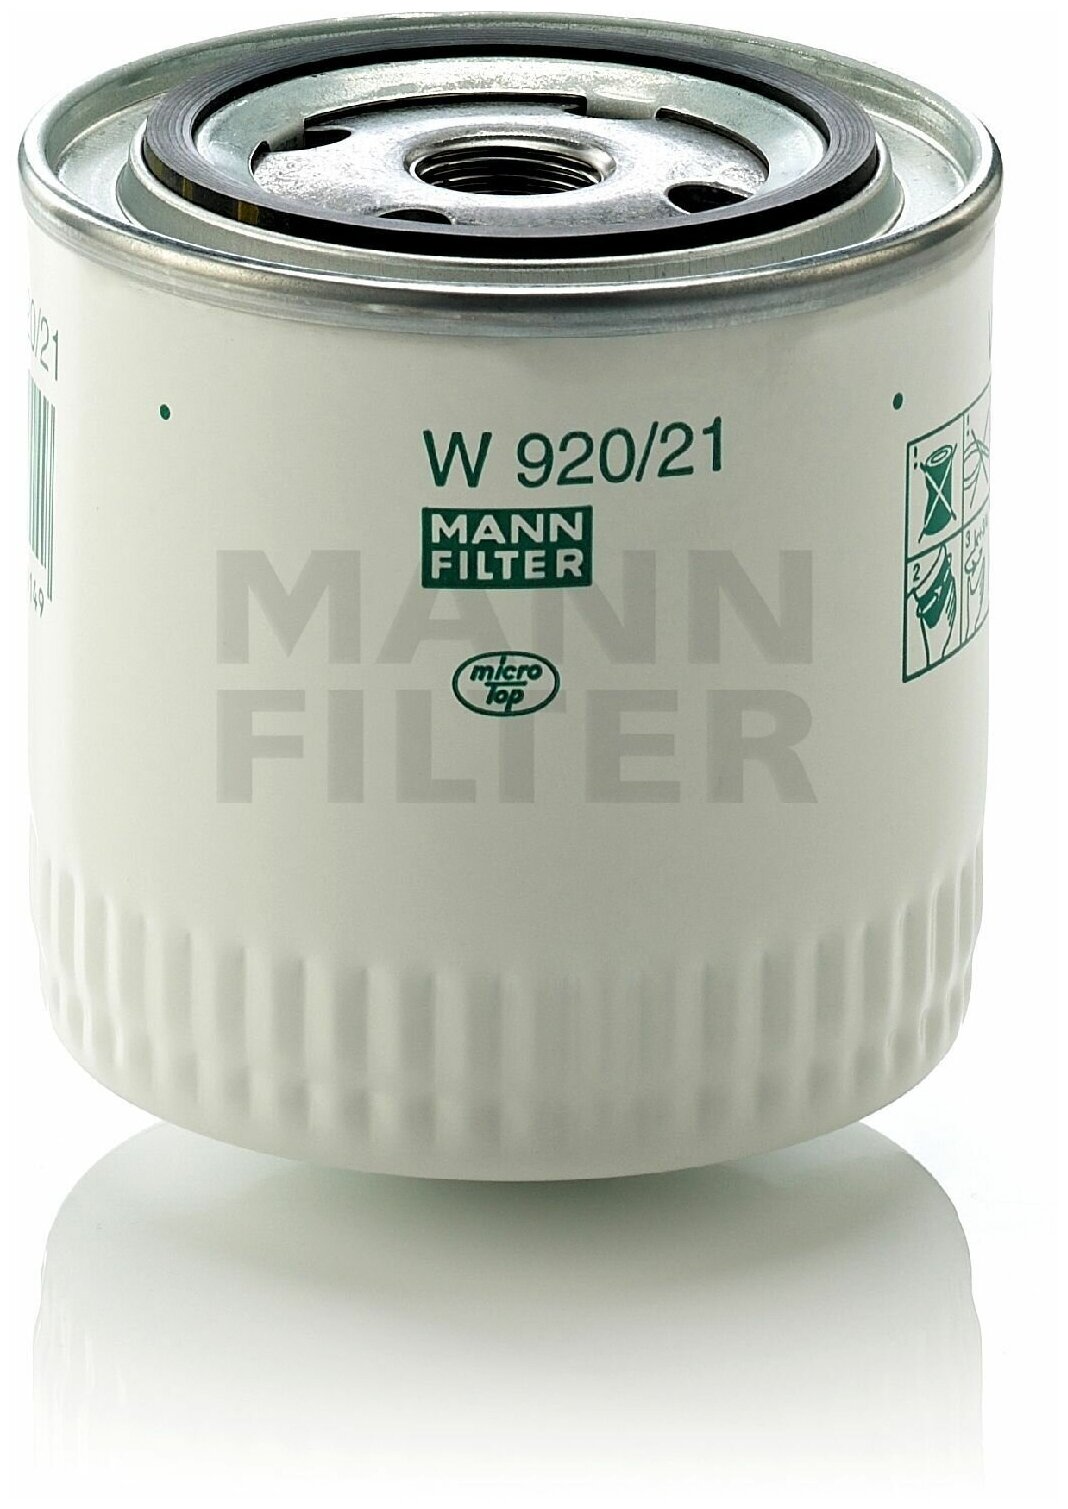 Масляный фильтр MANN-FILTER W920/21 ВАЗ УАЗ ГАЗ